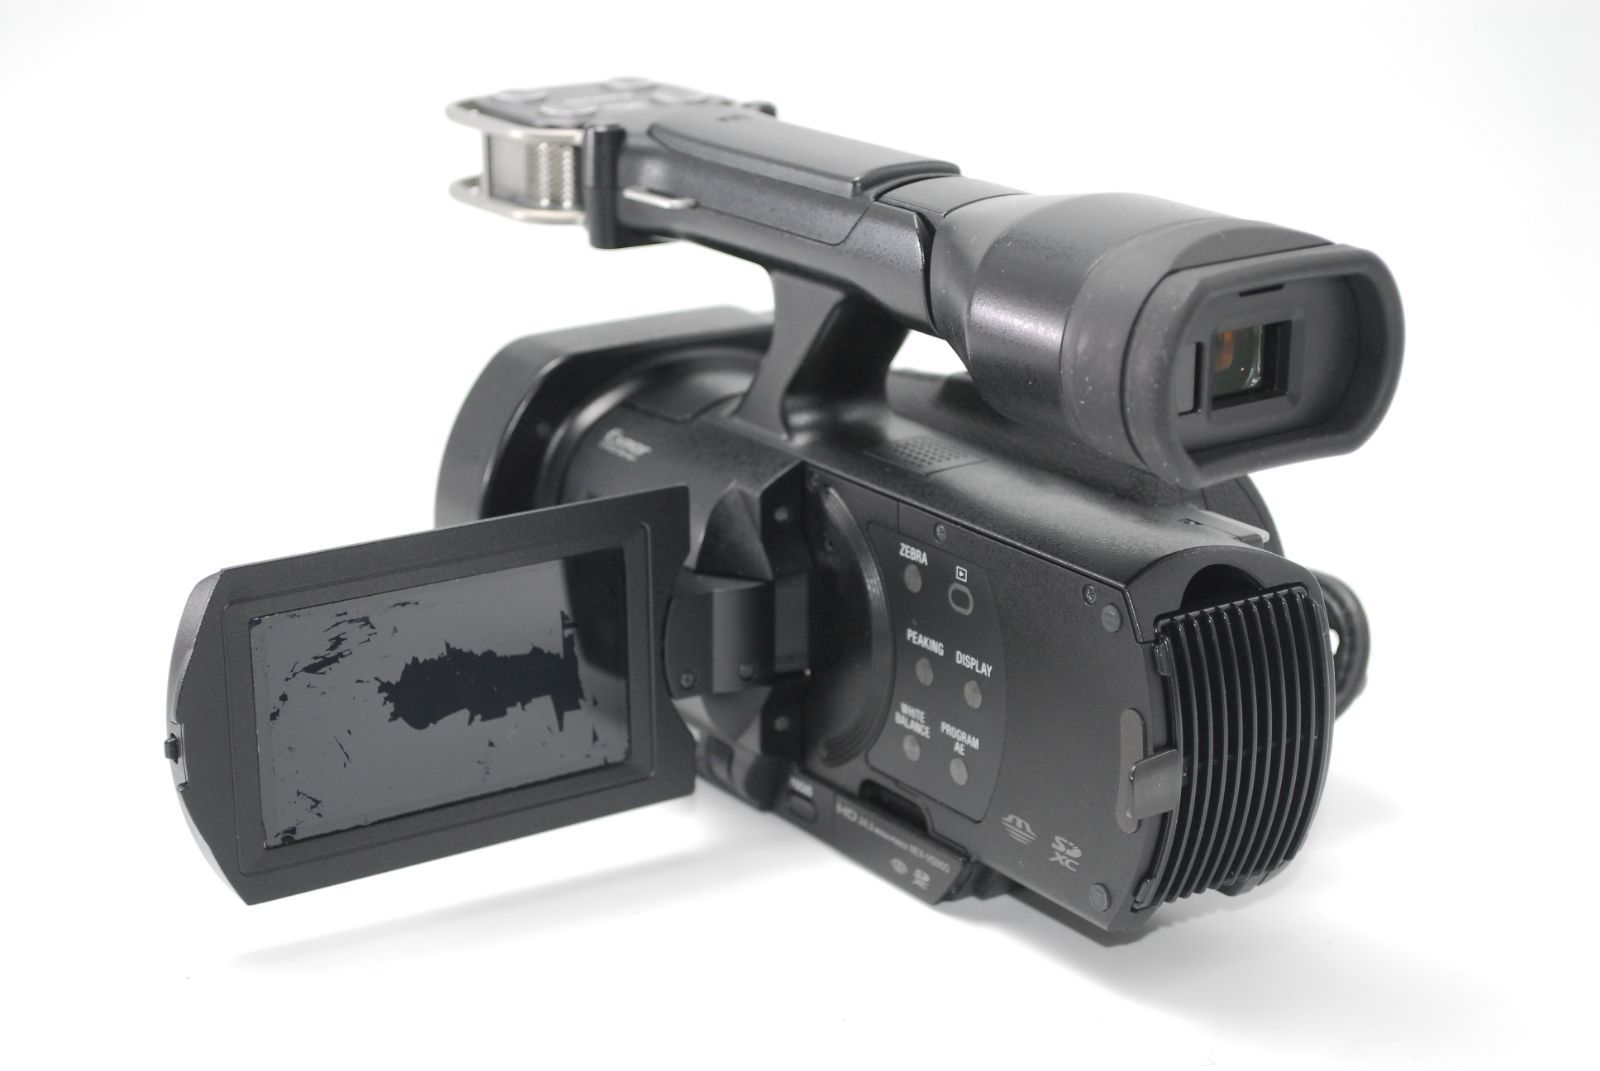 ソニー SONY レンズ交換式HDビデオカメラ Handycam VG900 ボディー NEX-VG900